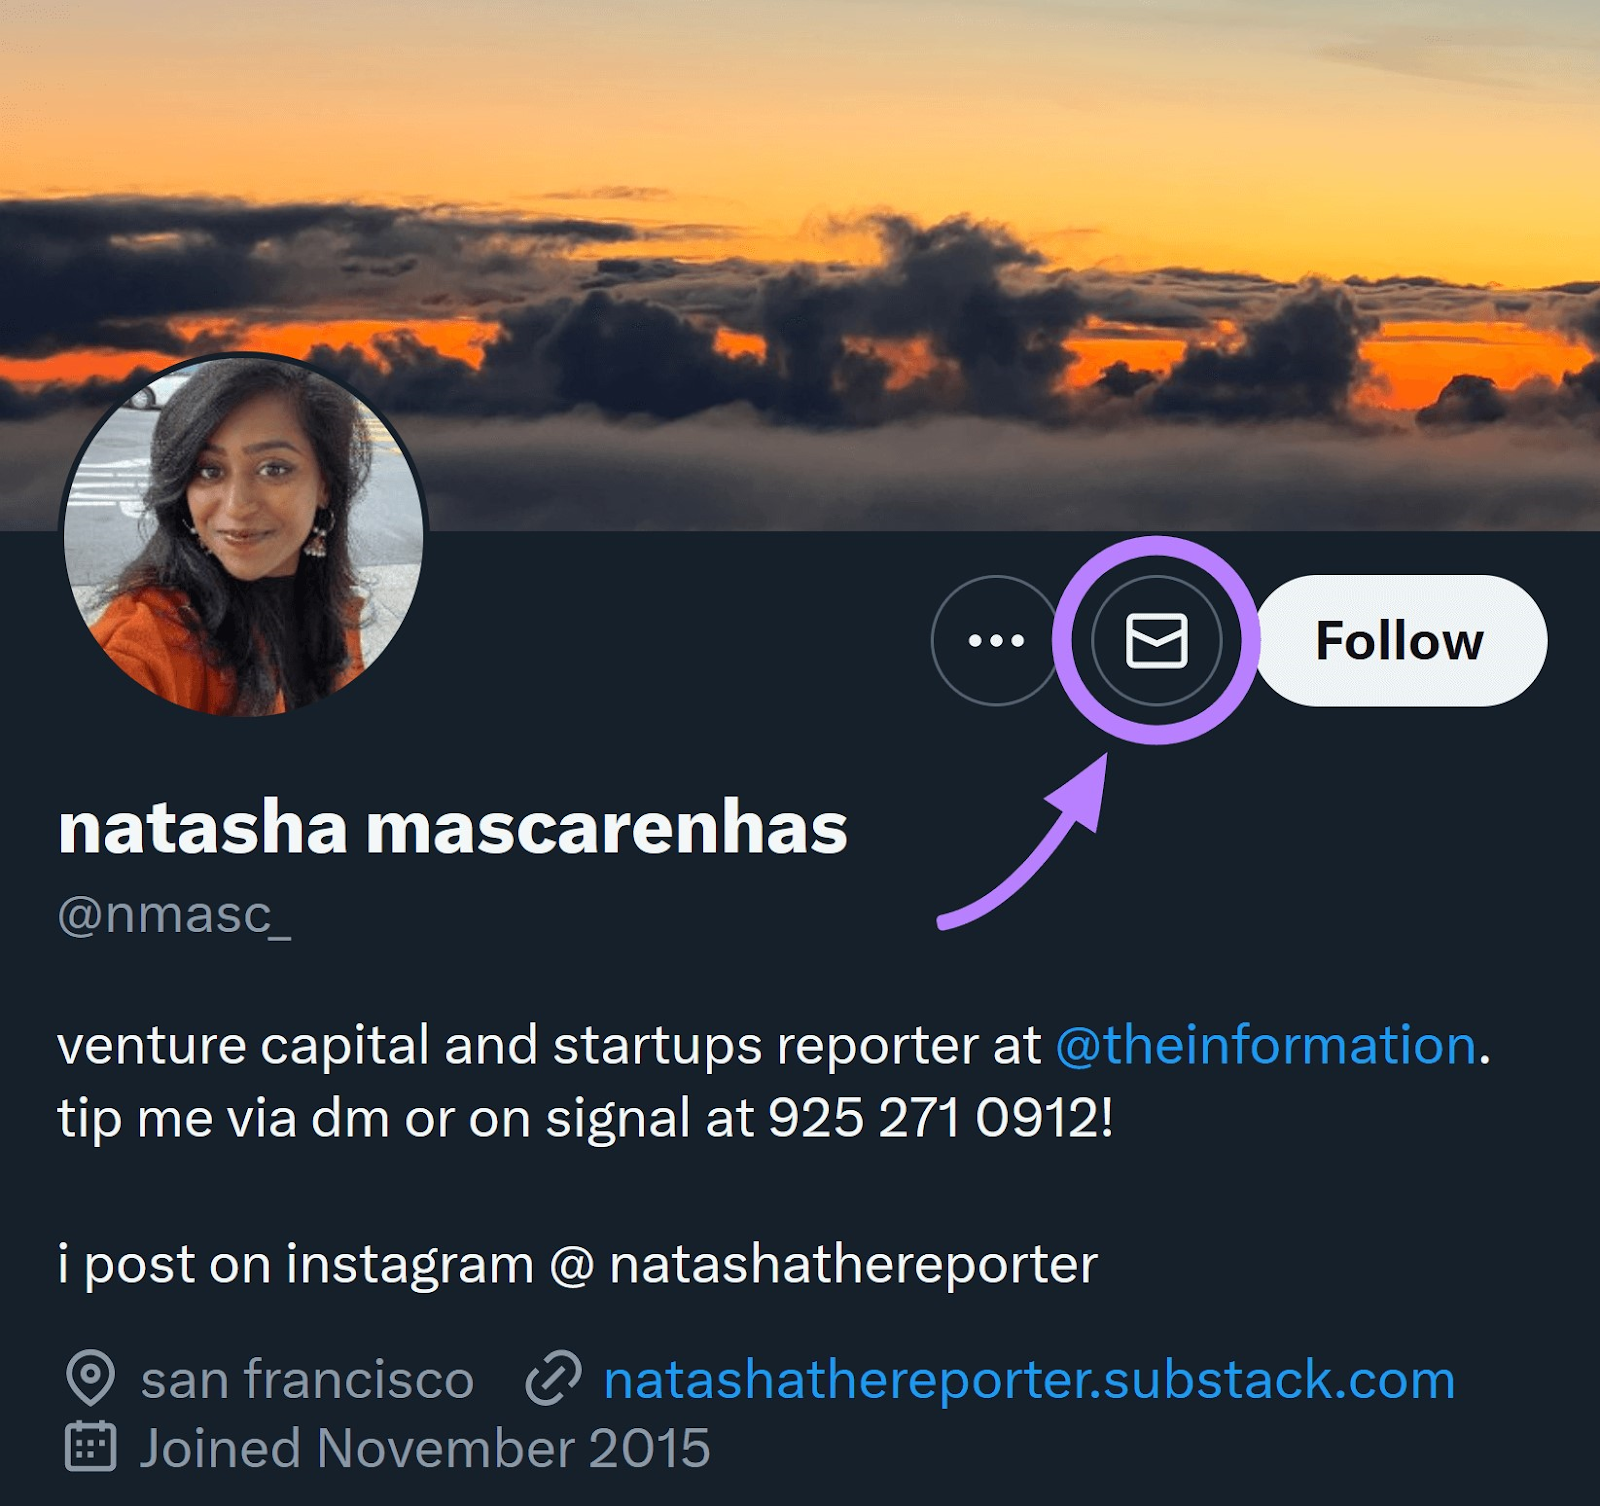 "Natasha Mascarenhas" on Twitter